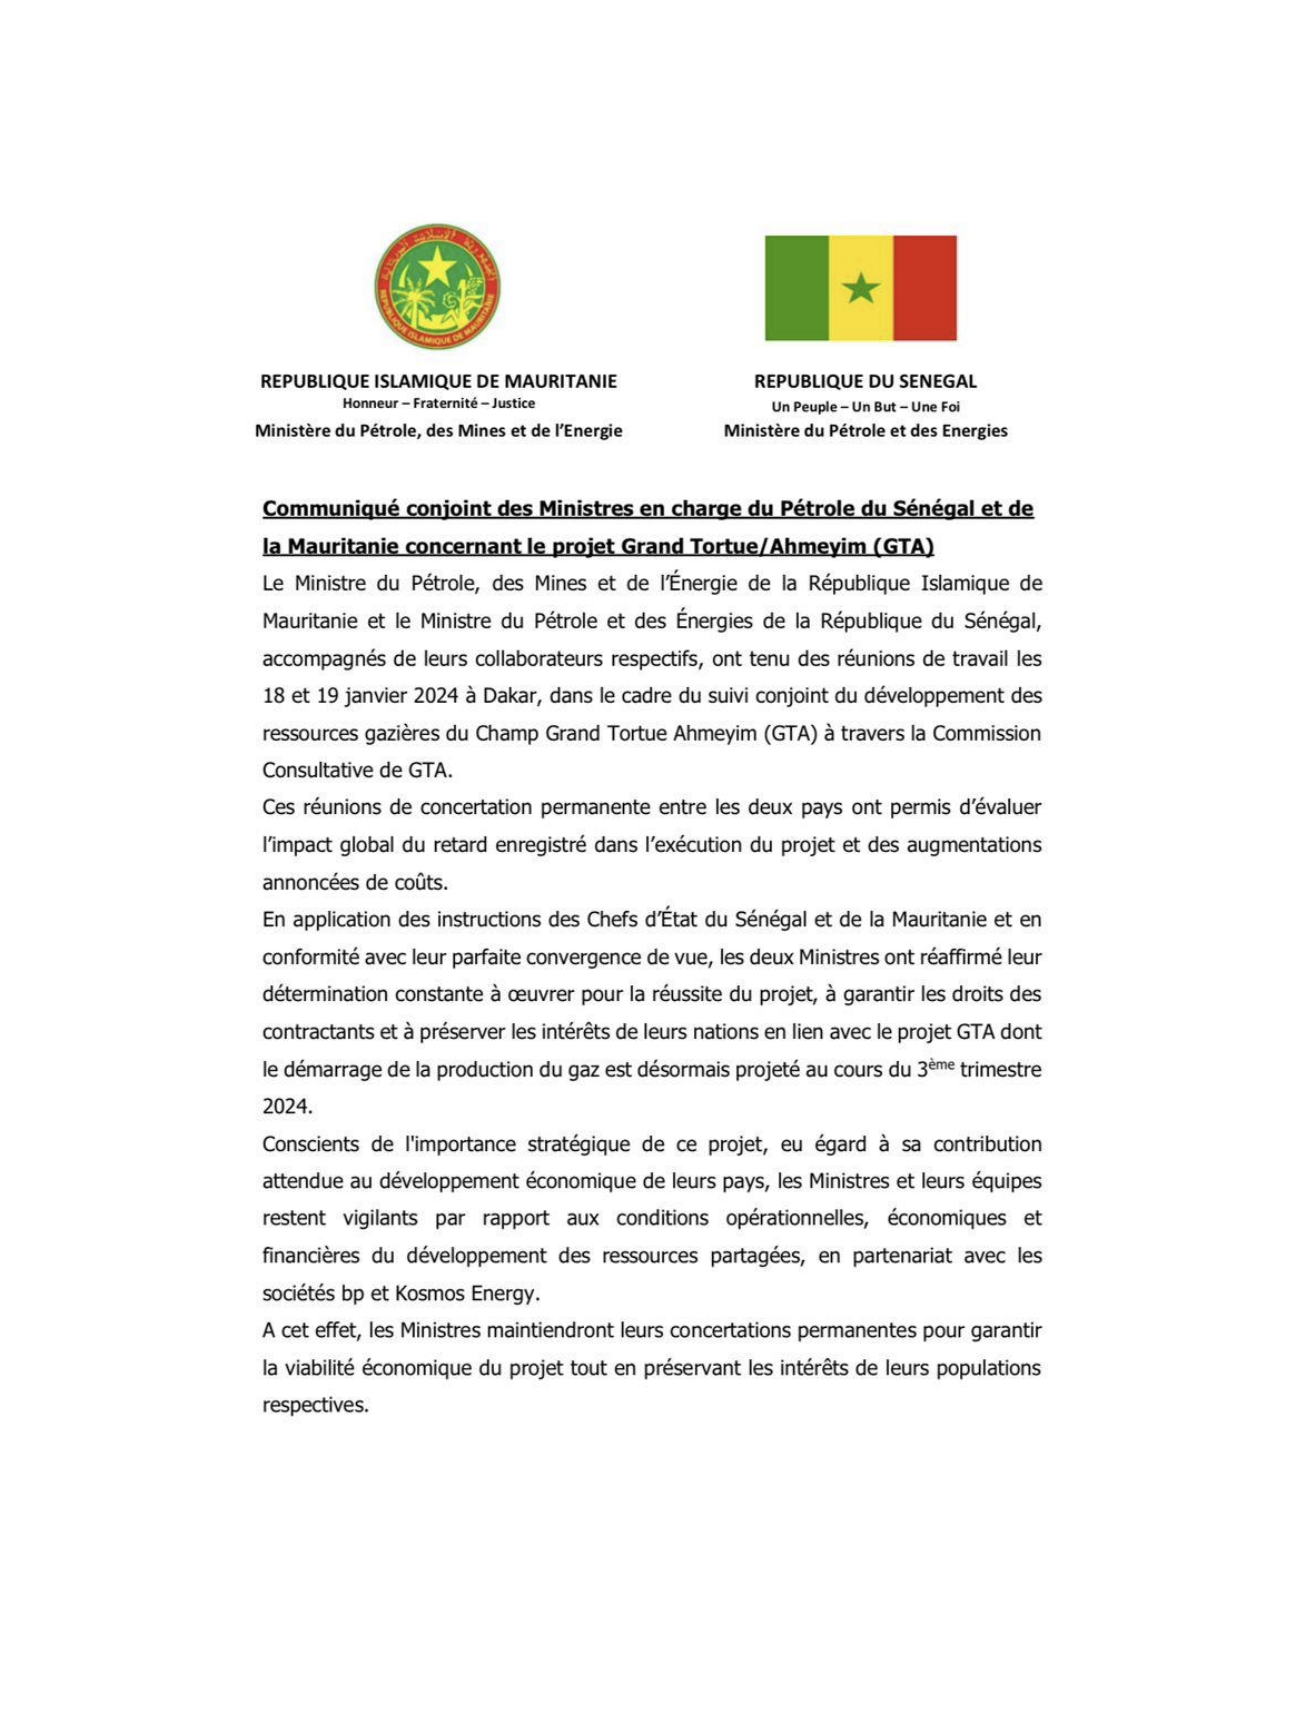 Communiqué Conjoint des Ministres en charge du Pétrole du Sénégal et de la Mauritanie